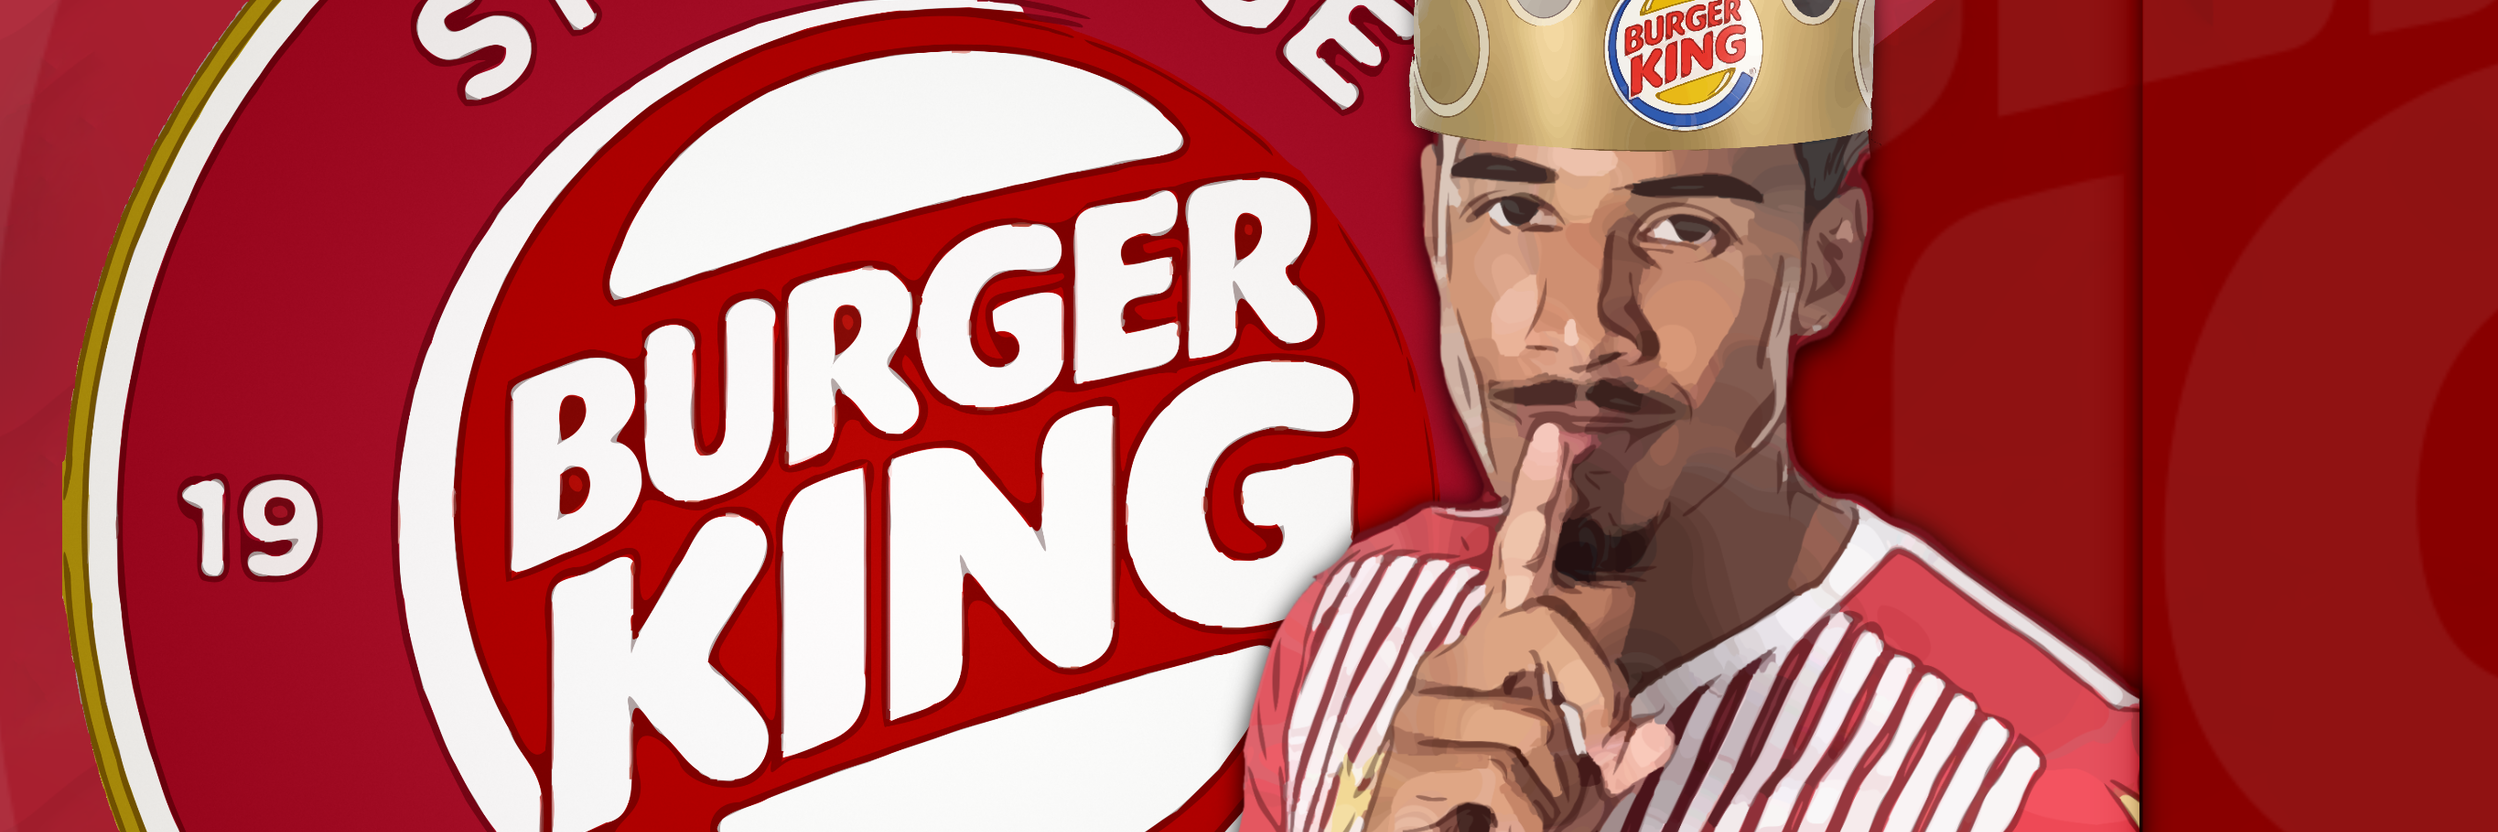 Burger King, Stevenage Challenge